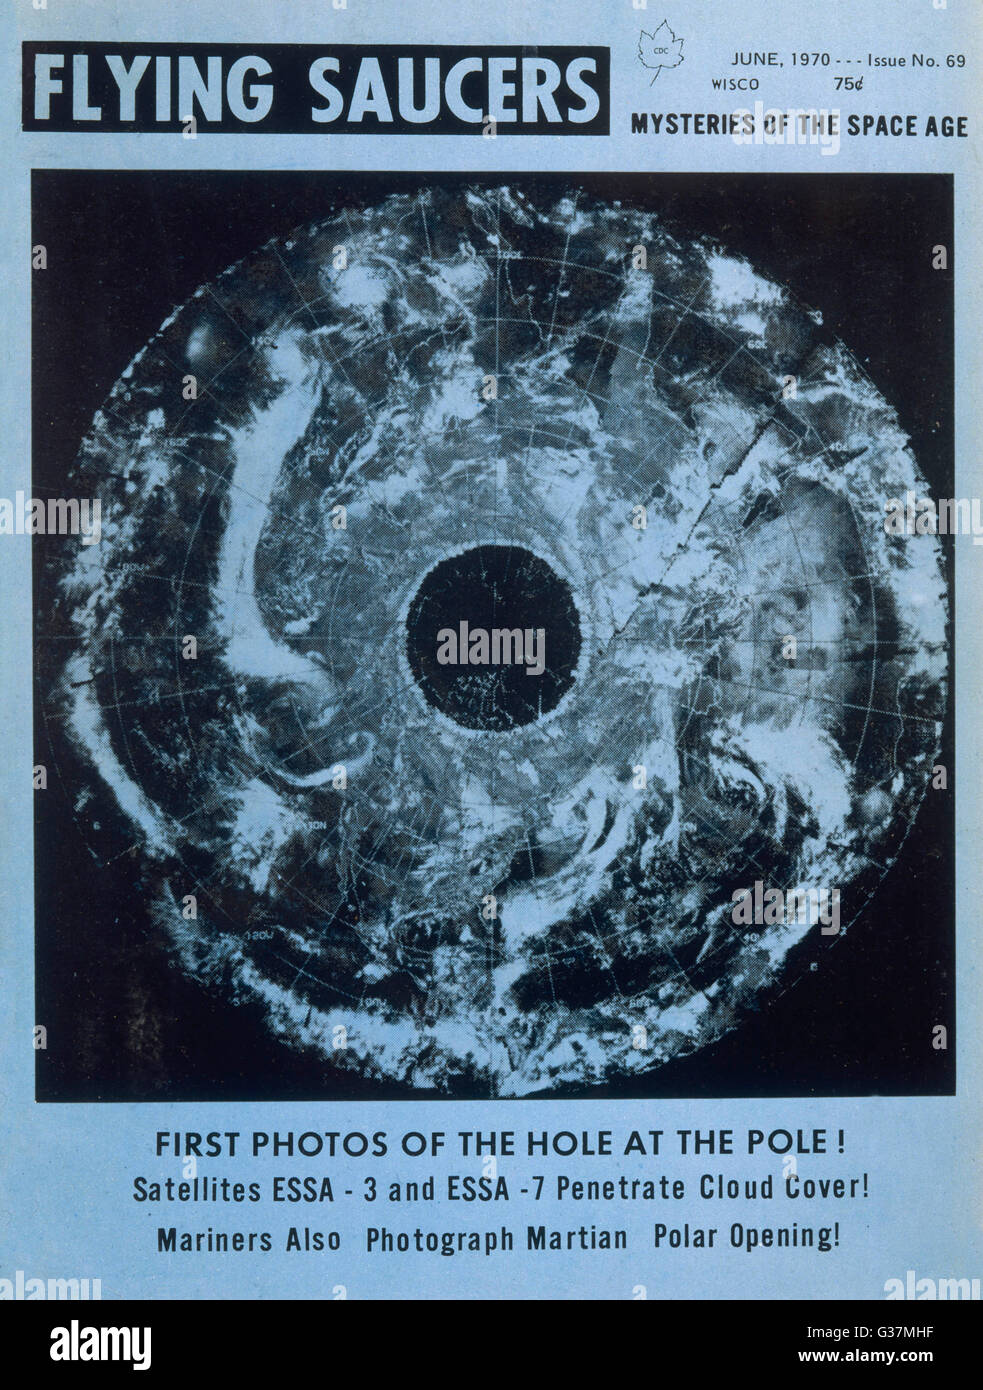 DIE hohle Erde - NASA-Foto zeigt das Loch am Nordpol, was beweist, dass die  Erde hohl ist. Datum: 1970 Stockfotografie - Alamy